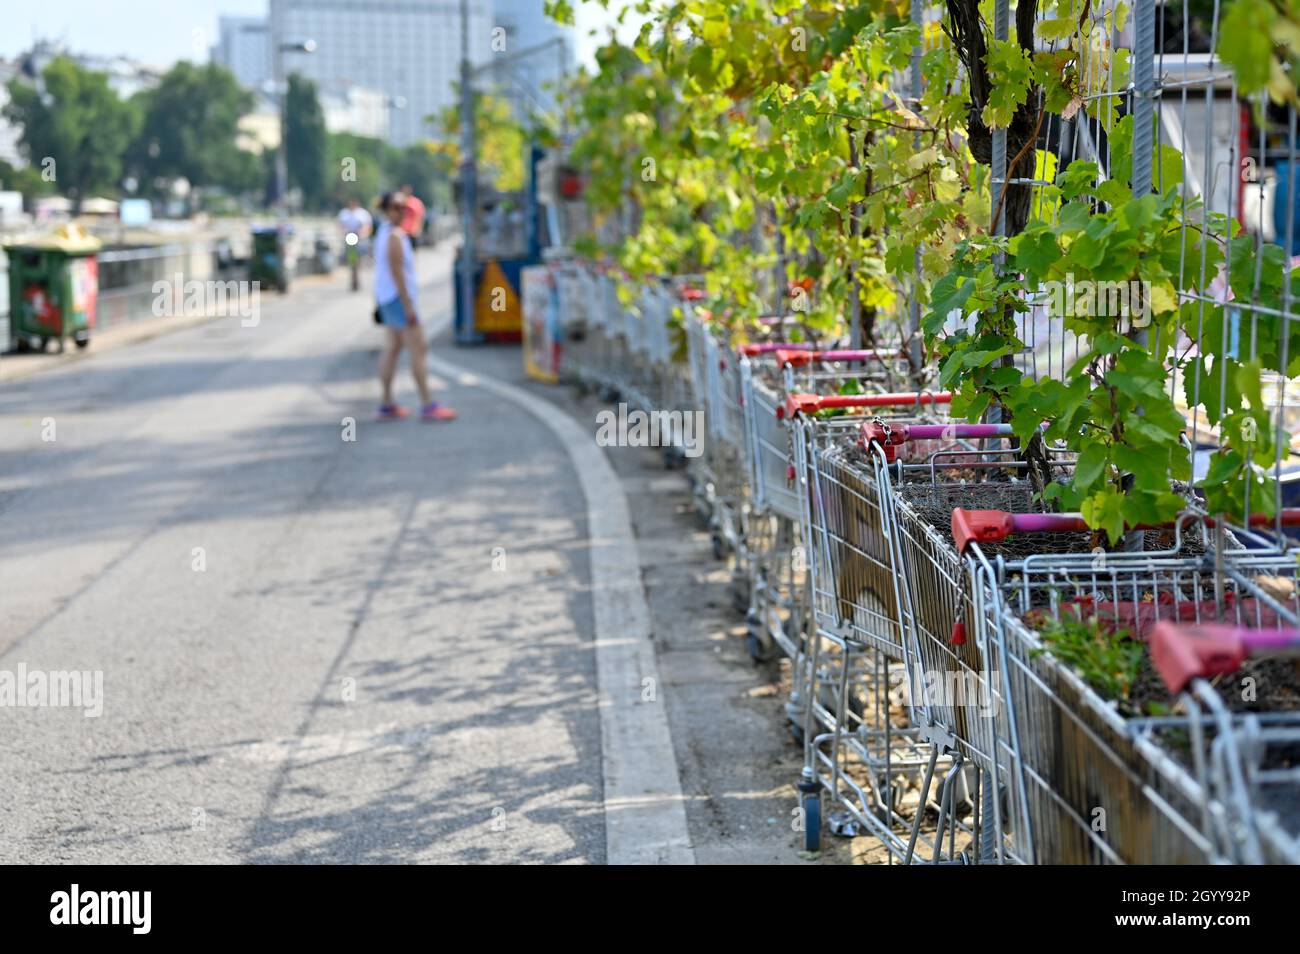 In uno spazio riservato ai passeggini lungo un fiume in una grande città, l'area è separata in un bar con carrelli pieni di fiori. Foto Stock